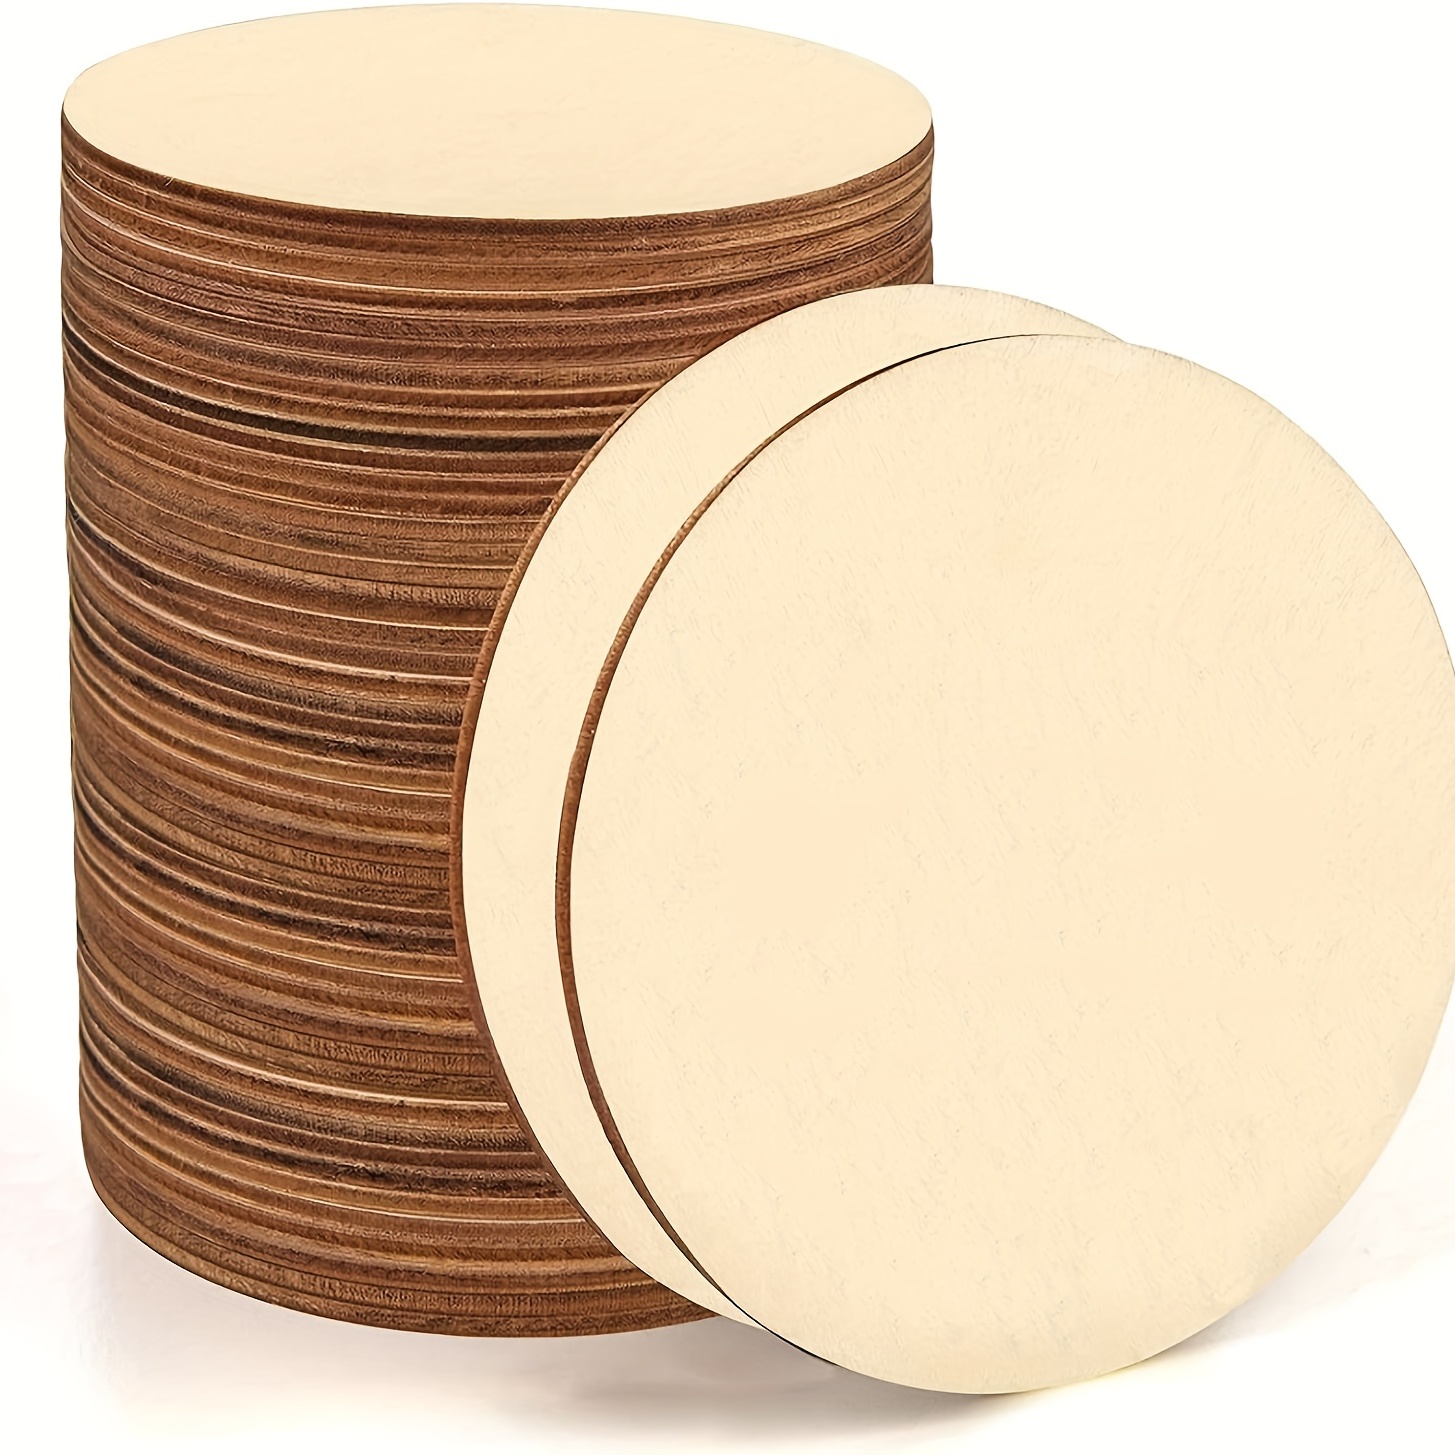 Paquete de 300 palitos de madera pequeños para manualidades, palitos de  madera pequeños a granel para proyectos de arte de bricolaje (2.5 x 0.4